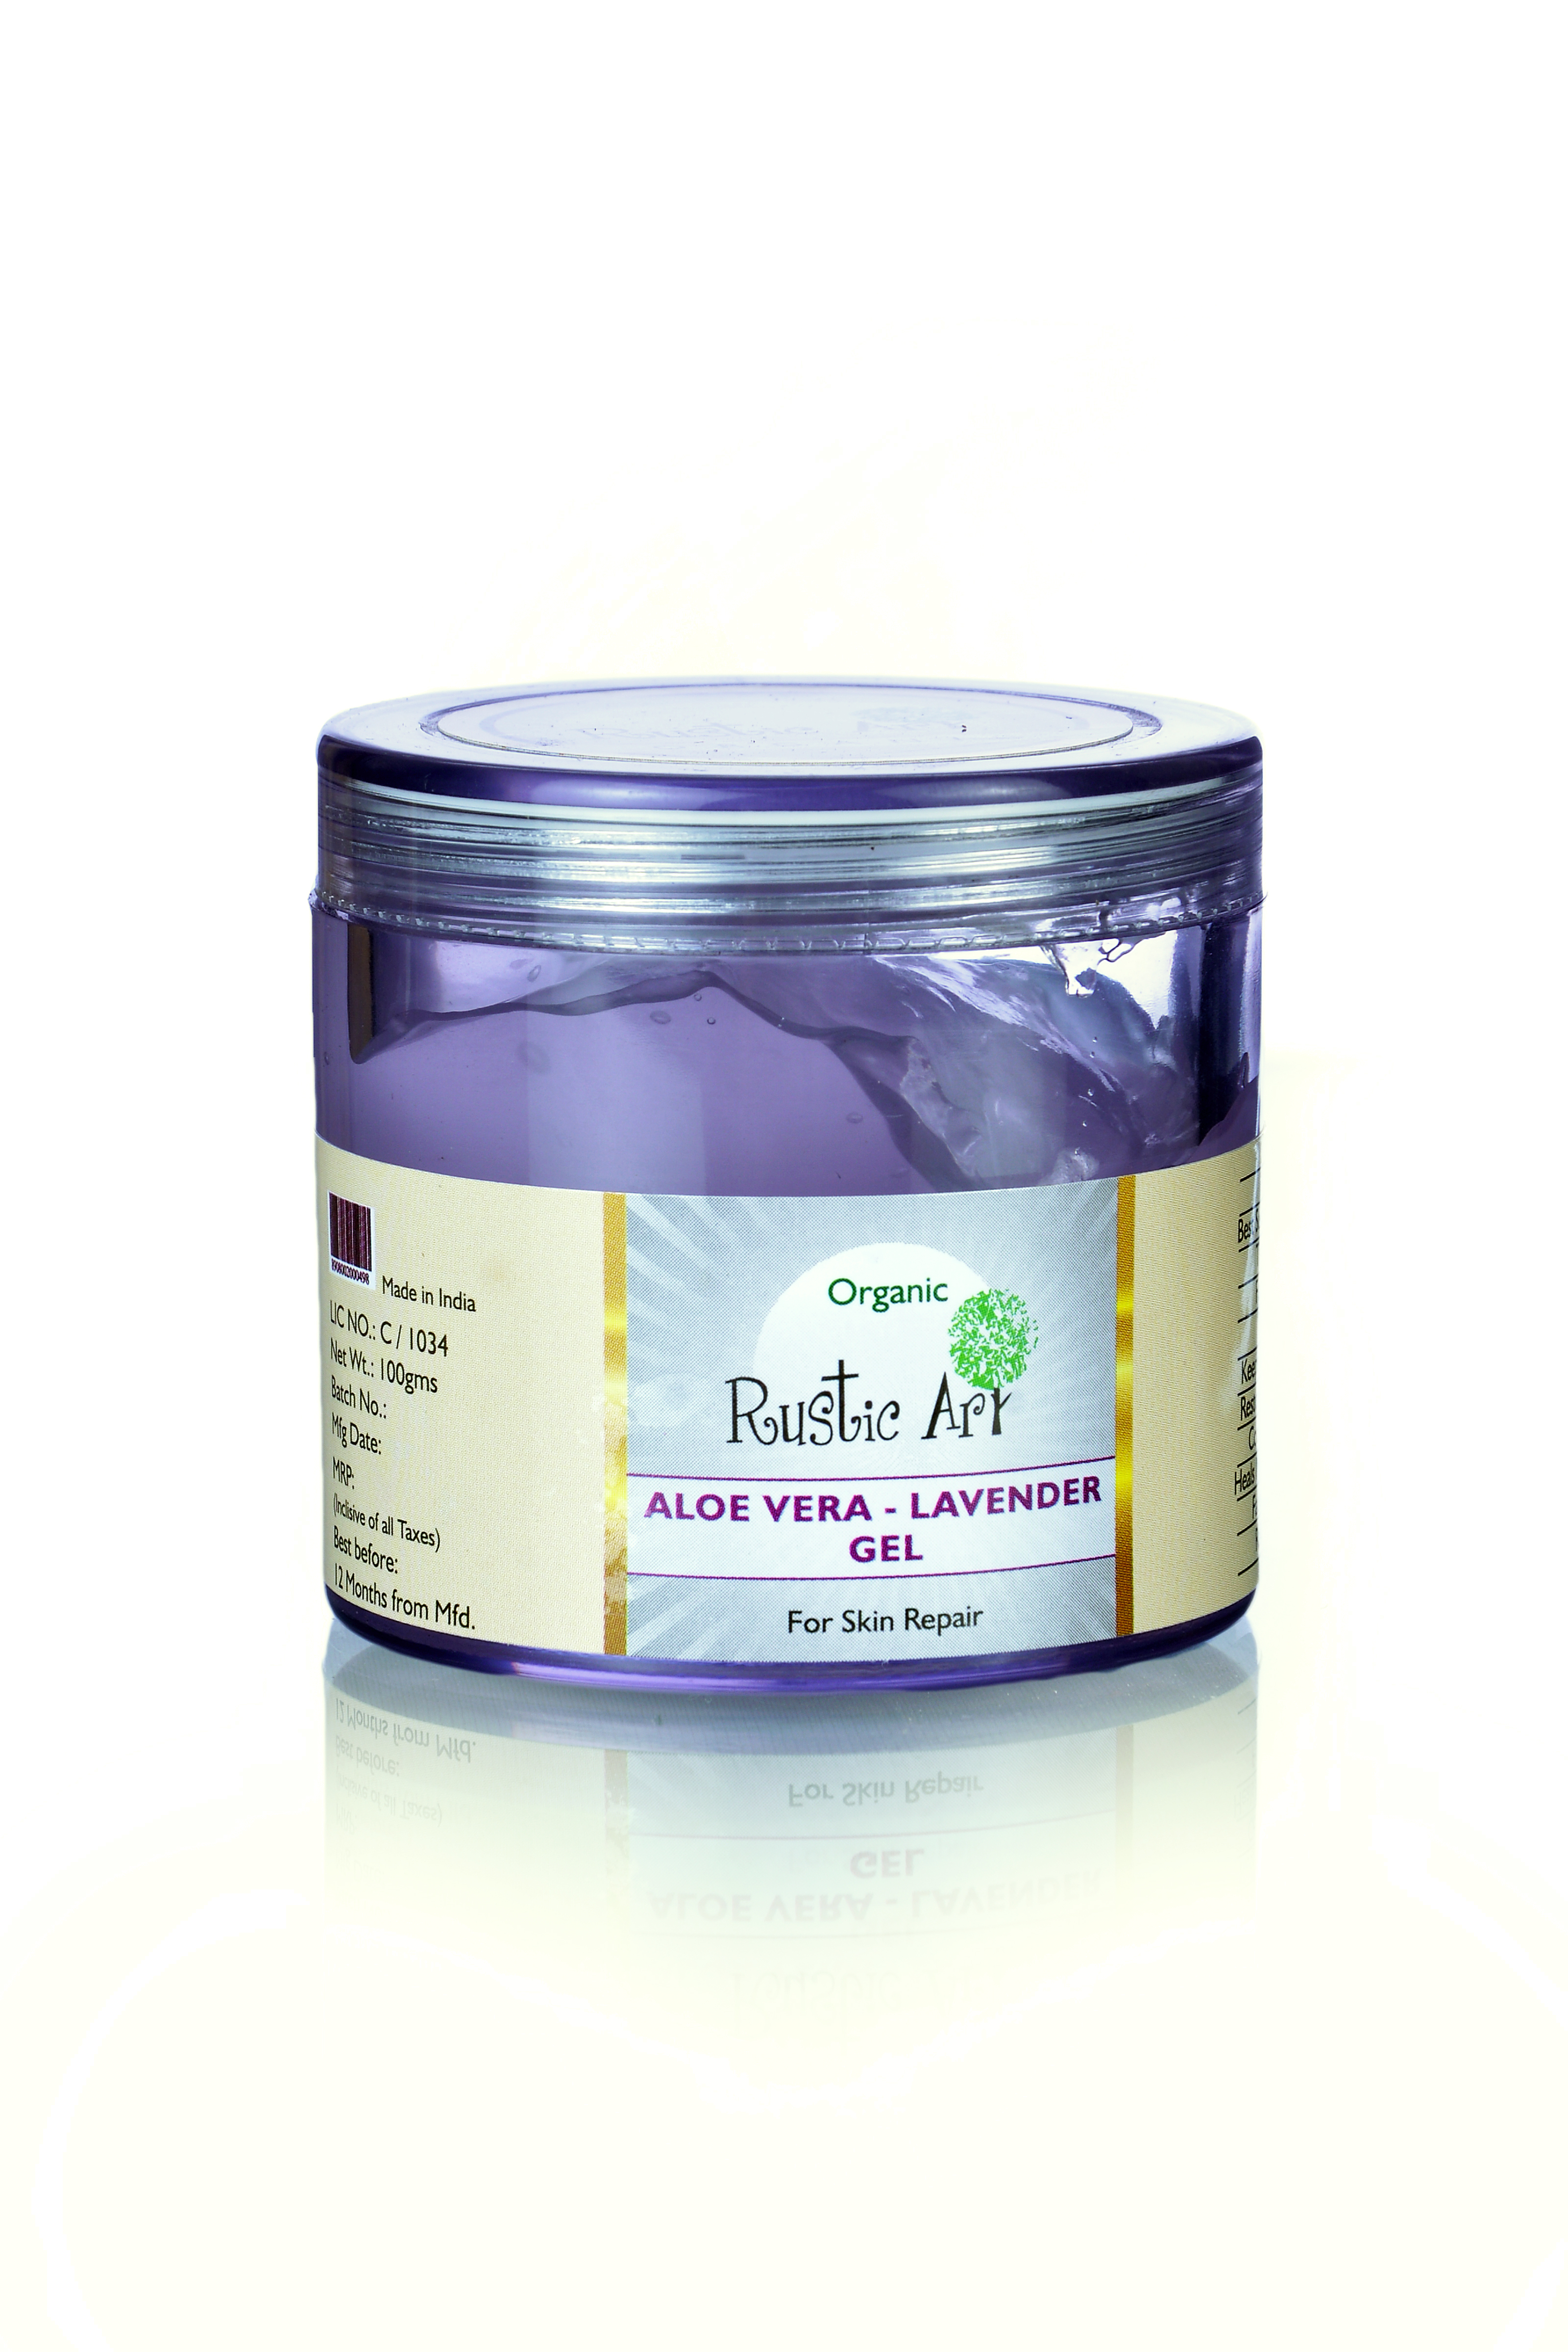 Buy Rustic Art Organic Aloe Vera Gel Lavender Gel at Best Price Online